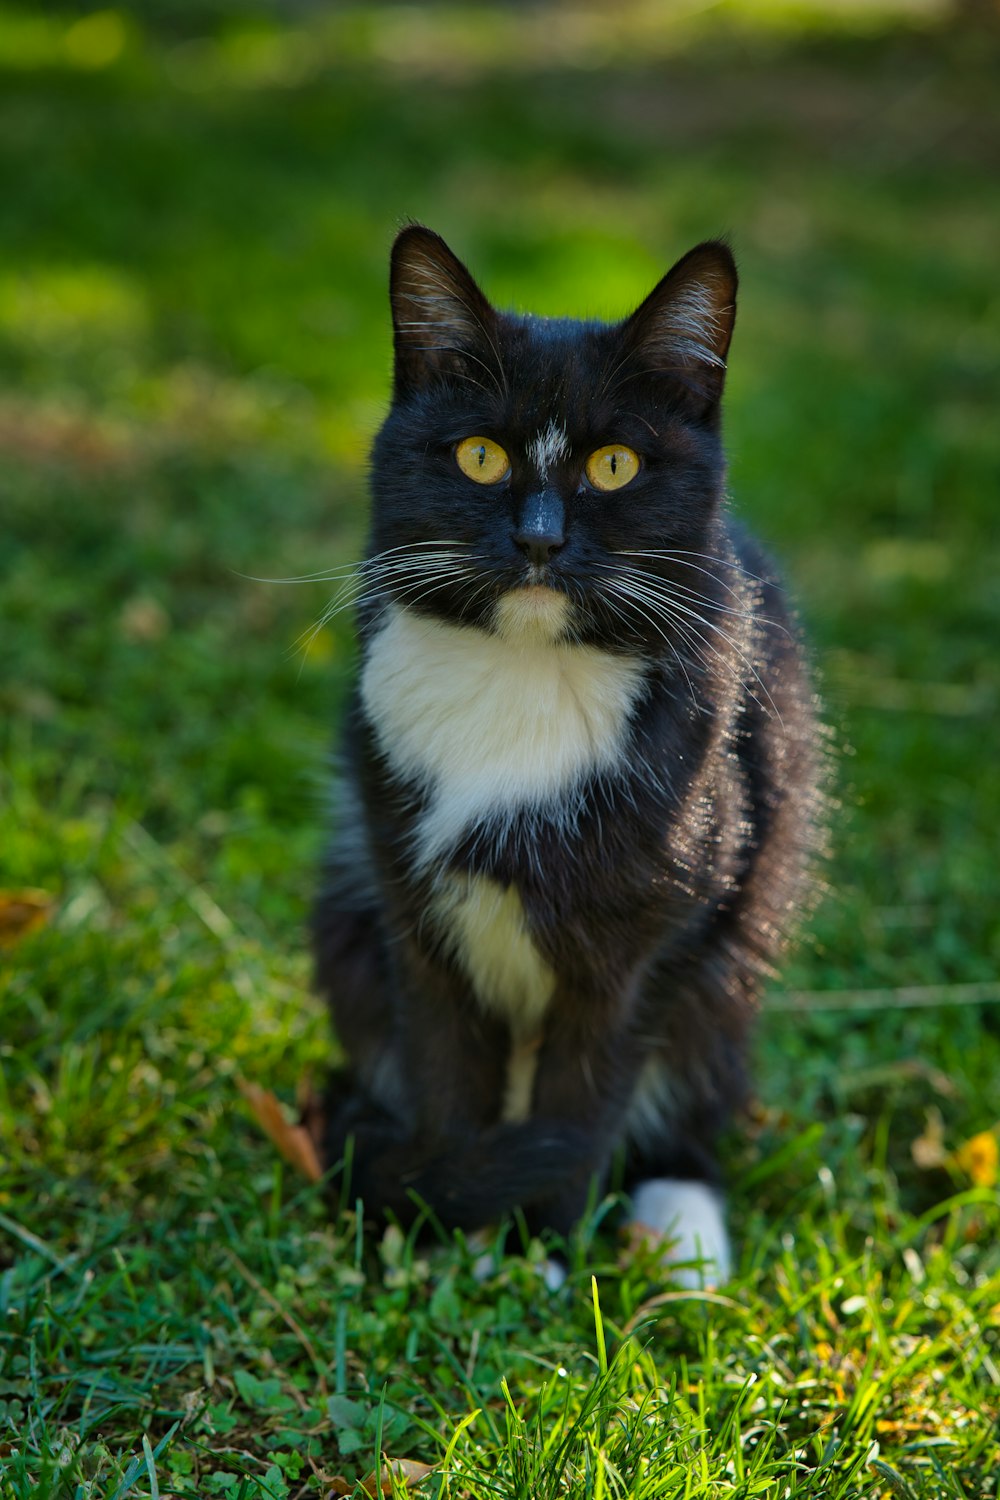 Eine schwarz-weiße Katze sitzt im Gras